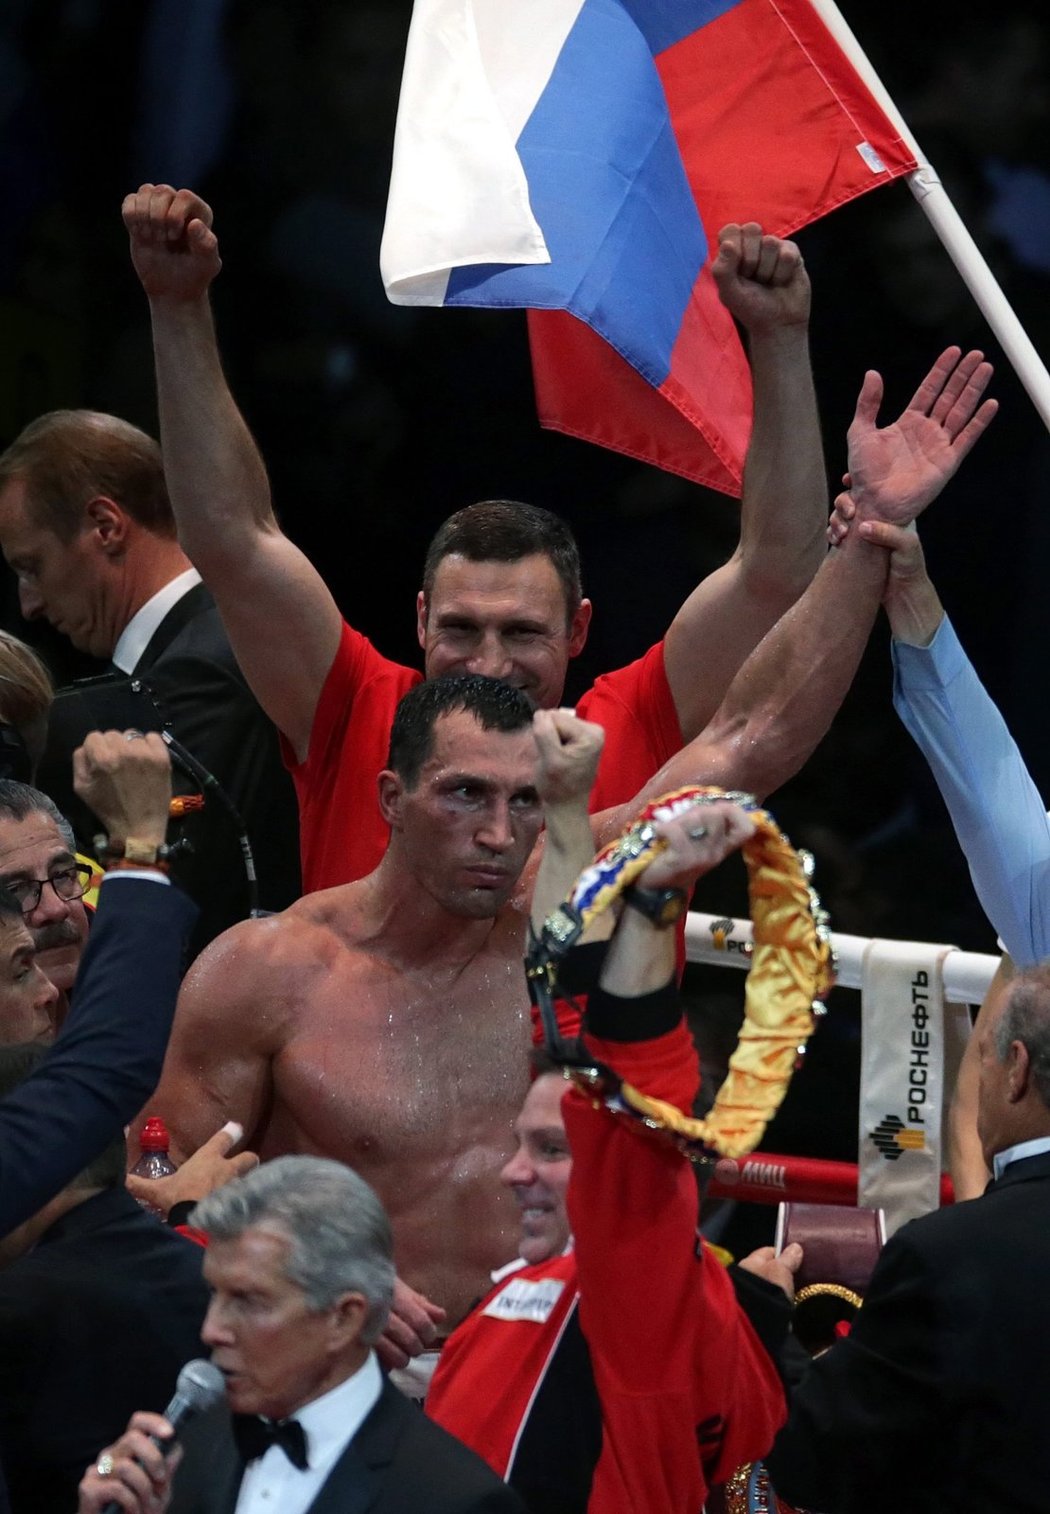 Ukrajinský boxer Vladimir Kličko zůstává mistrem světa v těžké váze organizací WBO, IBF, IBO a WBA. Rusa Alexandra Povětkina dnes v Olympijské hale v Moskvě porazil jednoznačně na body a prodloužil svou devítiletou neporazitelnost.